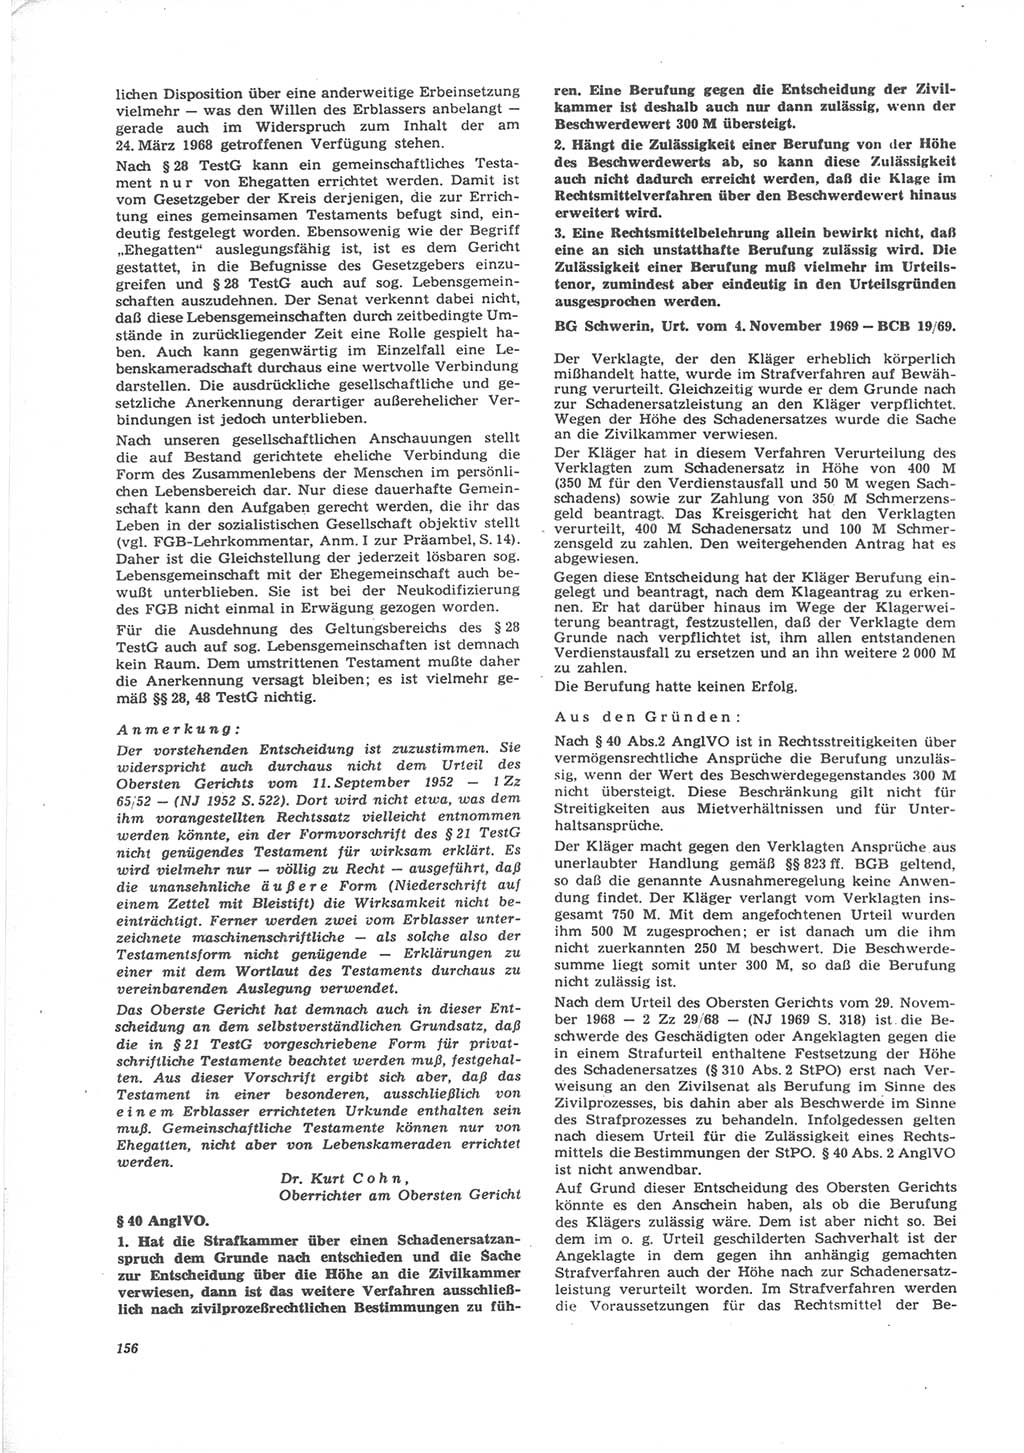 Neue Justiz (NJ), Zeitschrift für Recht und Rechtswissenschaft [Deutsche Demokratische Republik (DDR)], 24. Jahrgang 1970, Seite 156 (NJ DDR 1970, S. 156)